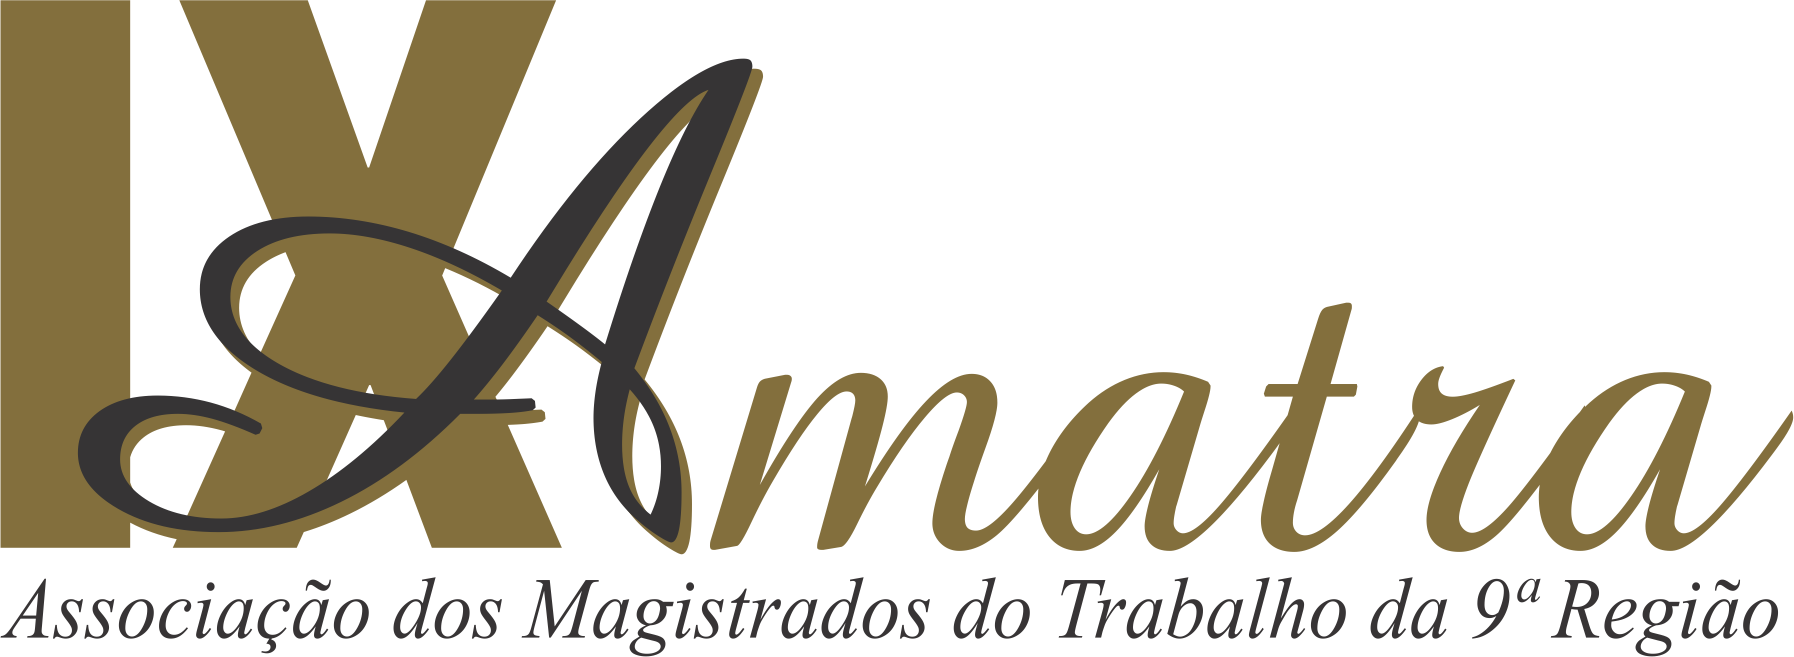 Associação dos Magistrados do Trabalho da 9° Região - AMATRA IX